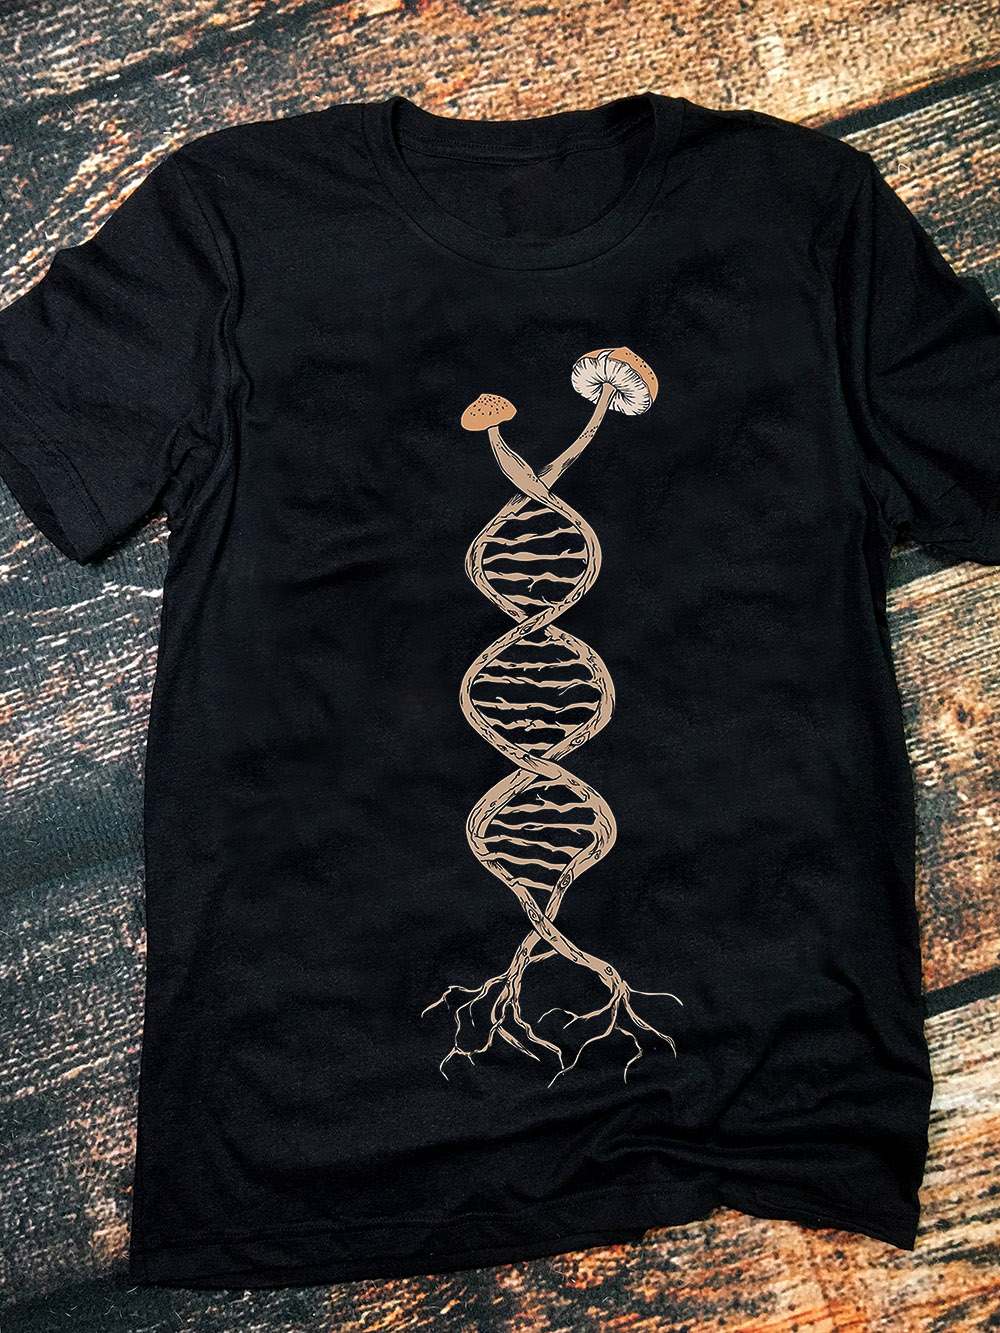 Mushroom gen - Mushroom DNA graphic T-shirt, gift for science lover